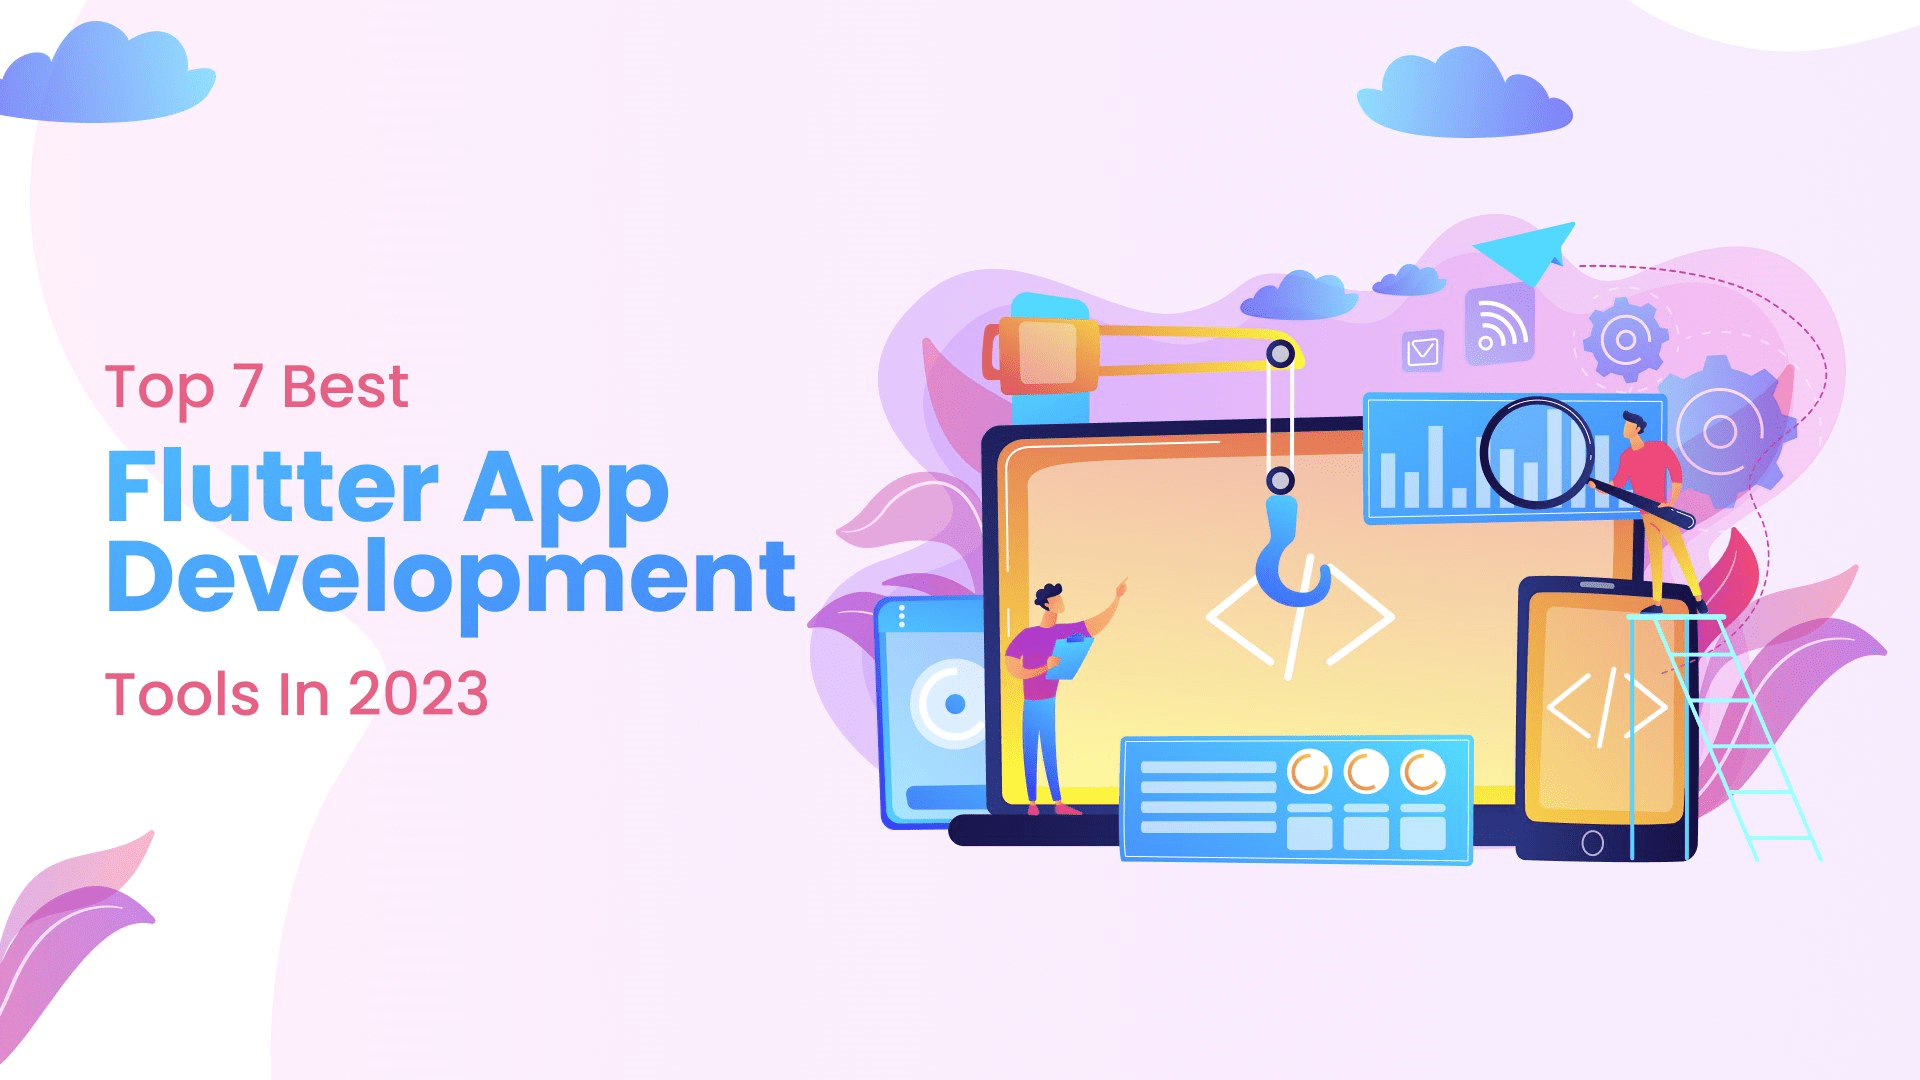 Top_7_Best_Flutter_App_Development_Tools_in_2023.png